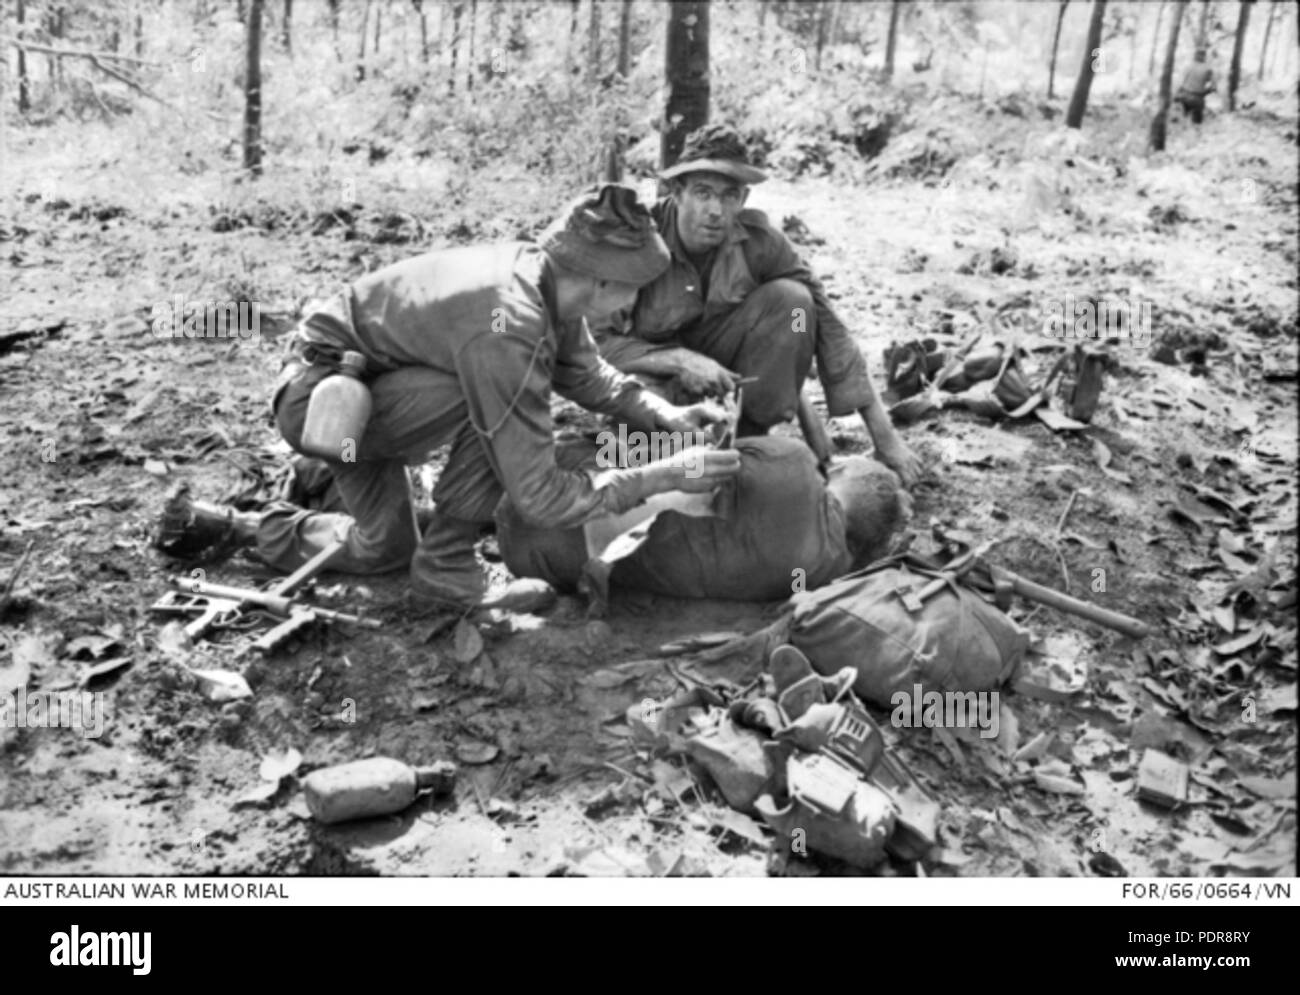 84 Medic la prestación de primeros auxilios a los heridos soldado australiano en Long Tan (AWM PARA660664VN) Foto de stock